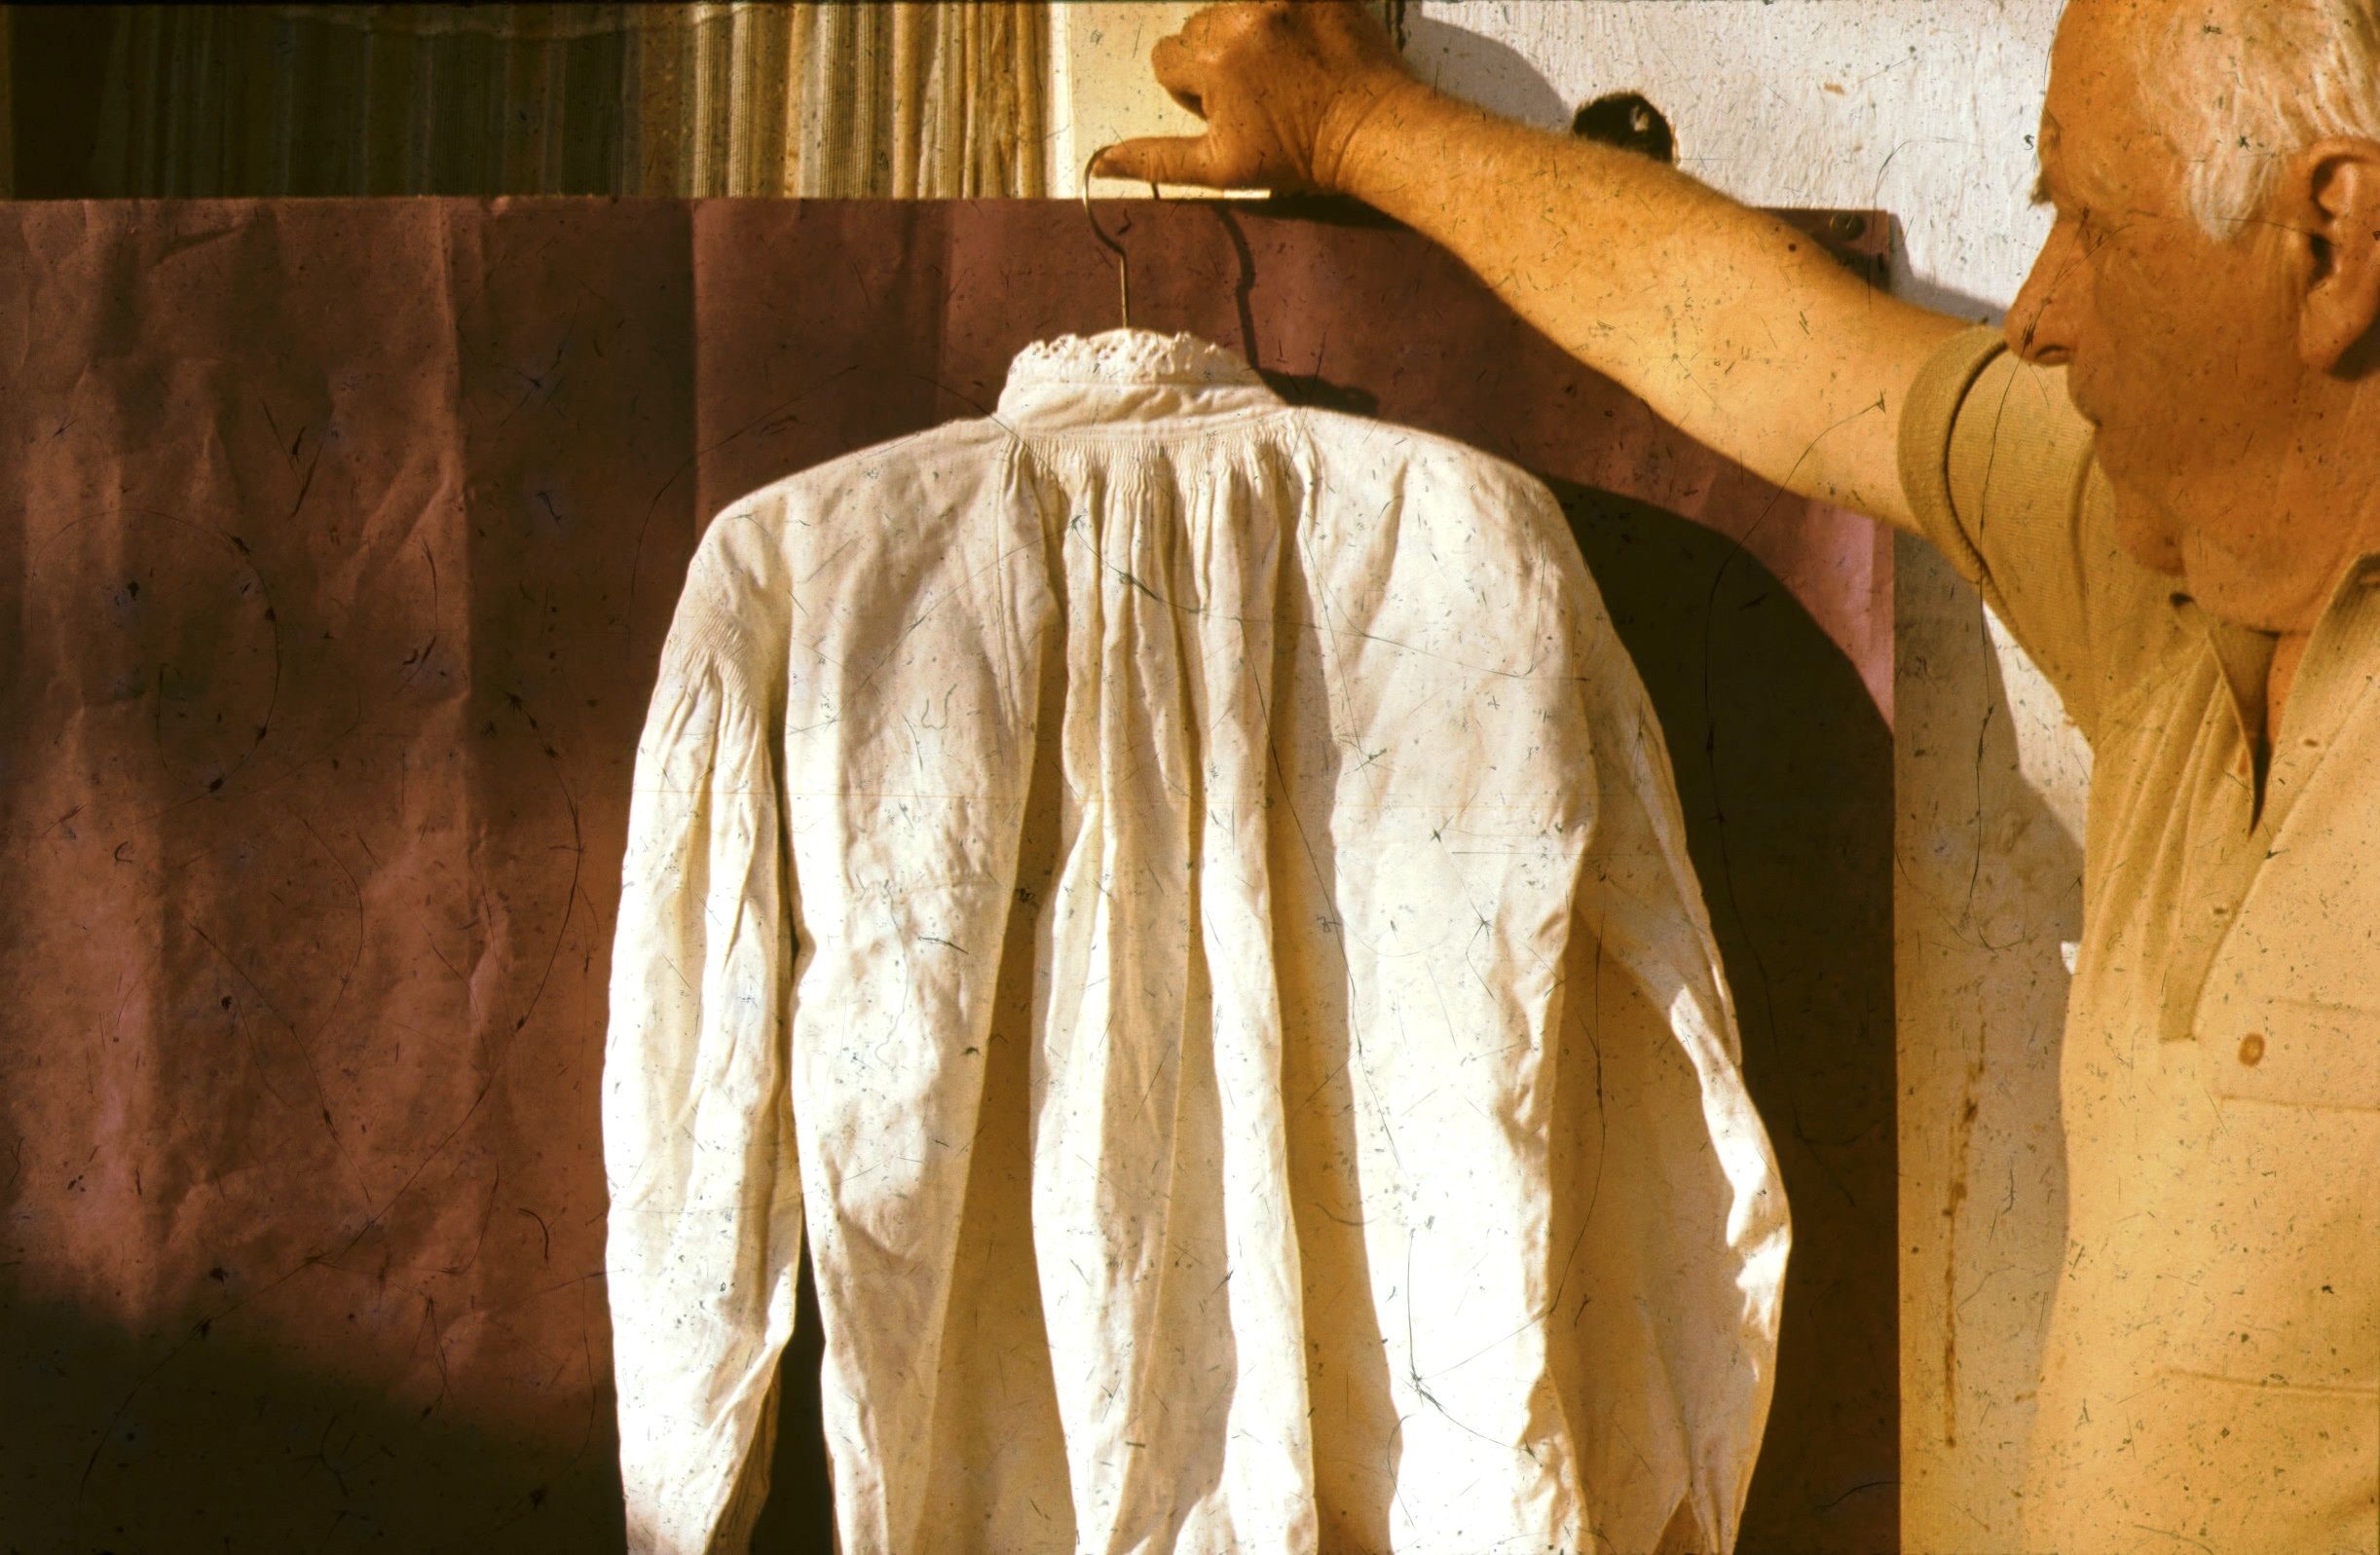 Törökkopányi fehérhímzéses férfi ing hátulról (Rippl-Rónai Múzeum CC BY-NC-ND)